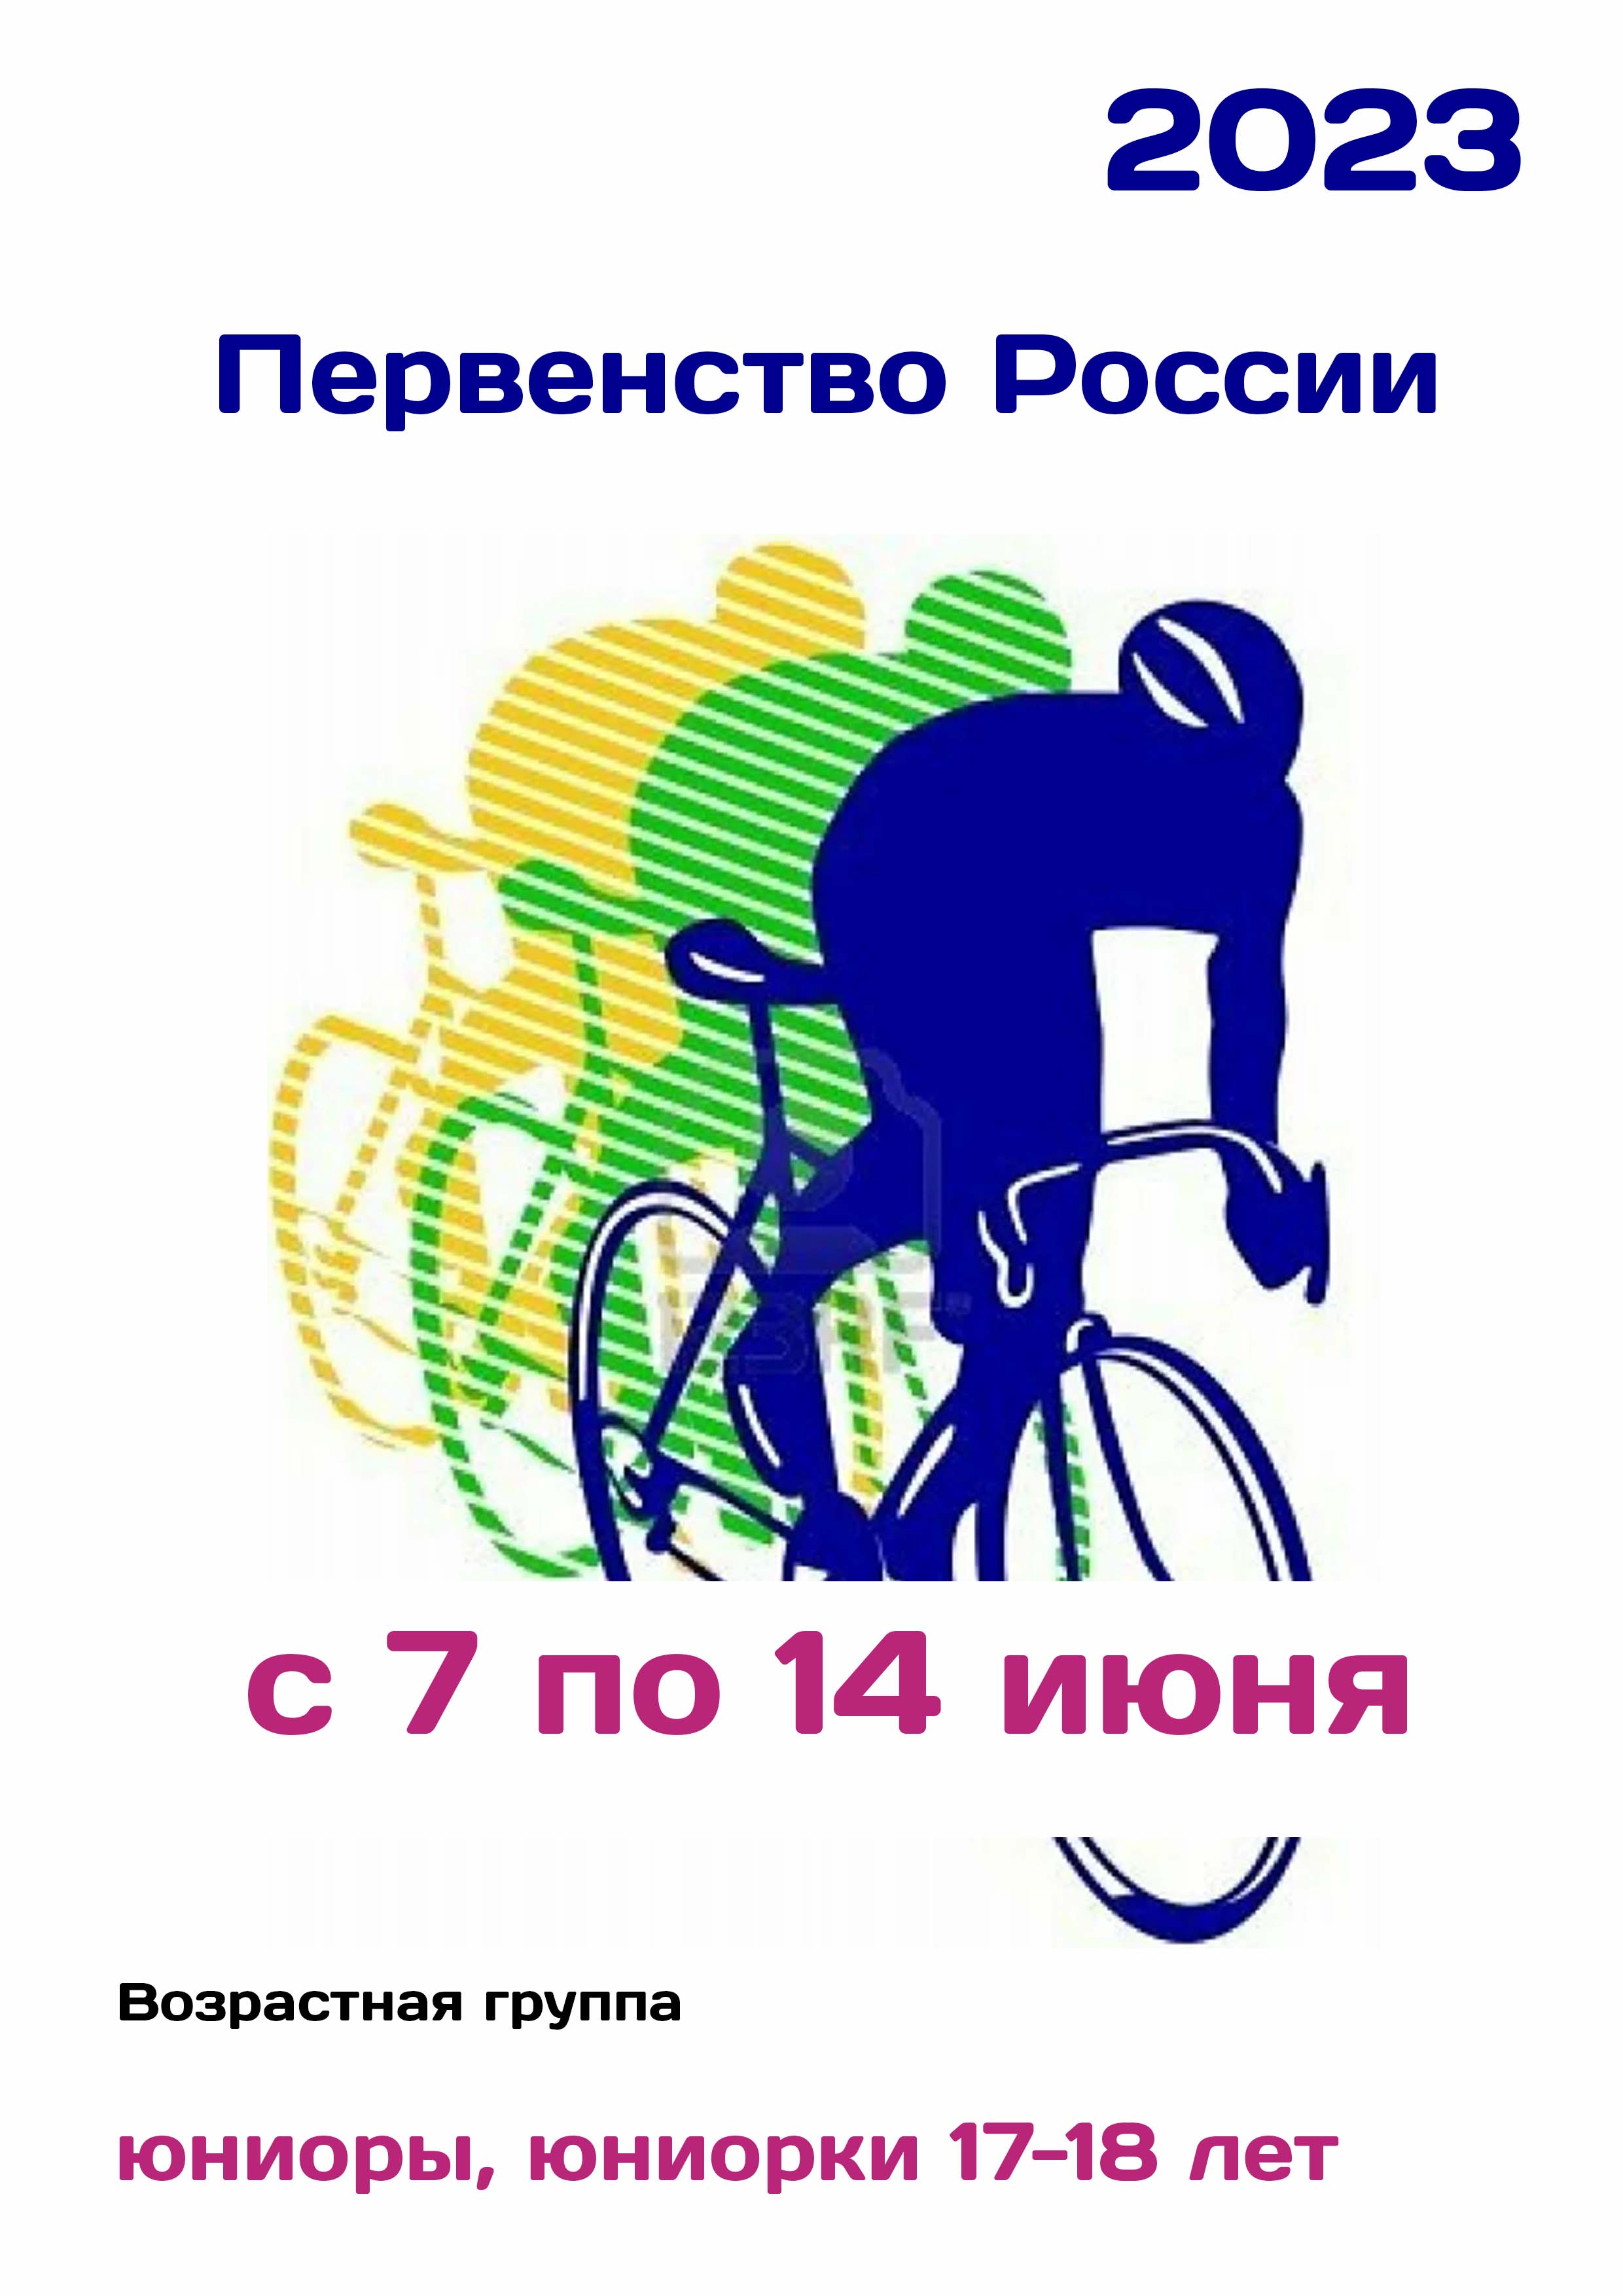 Первенство России по велоспорту 7 июня 2023 года 